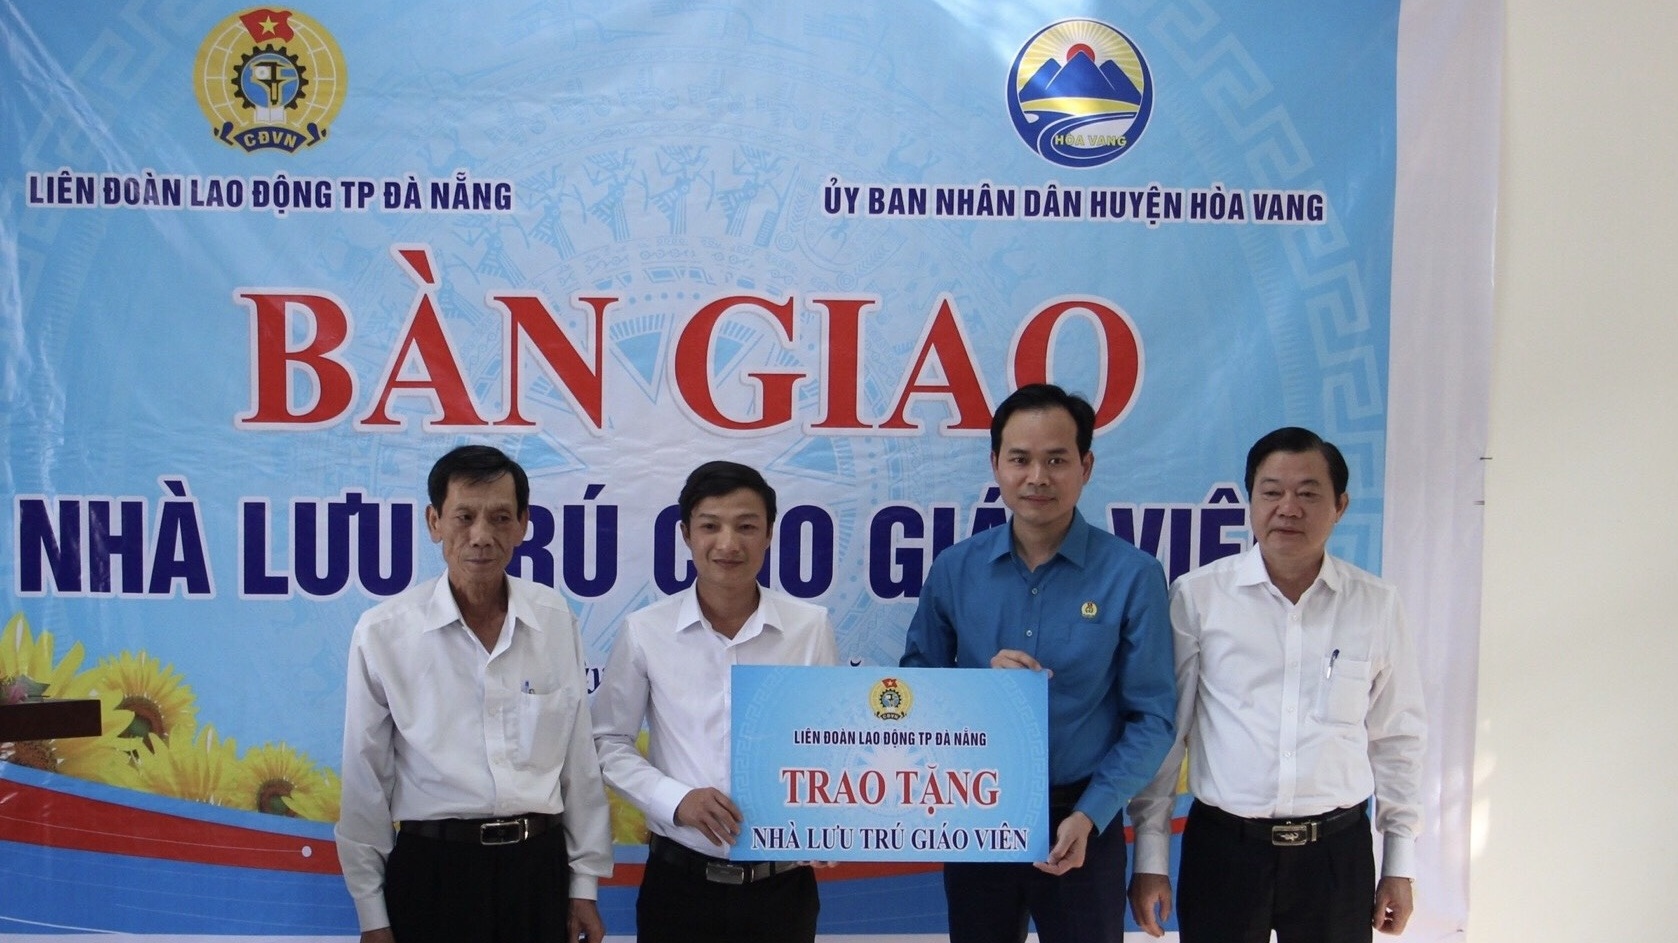 LĐLĐ TP. Đà Nẵng: Bàn giao nhà lưu trú hơn 1,4 tỉ đồng cho giáo viên miền núi